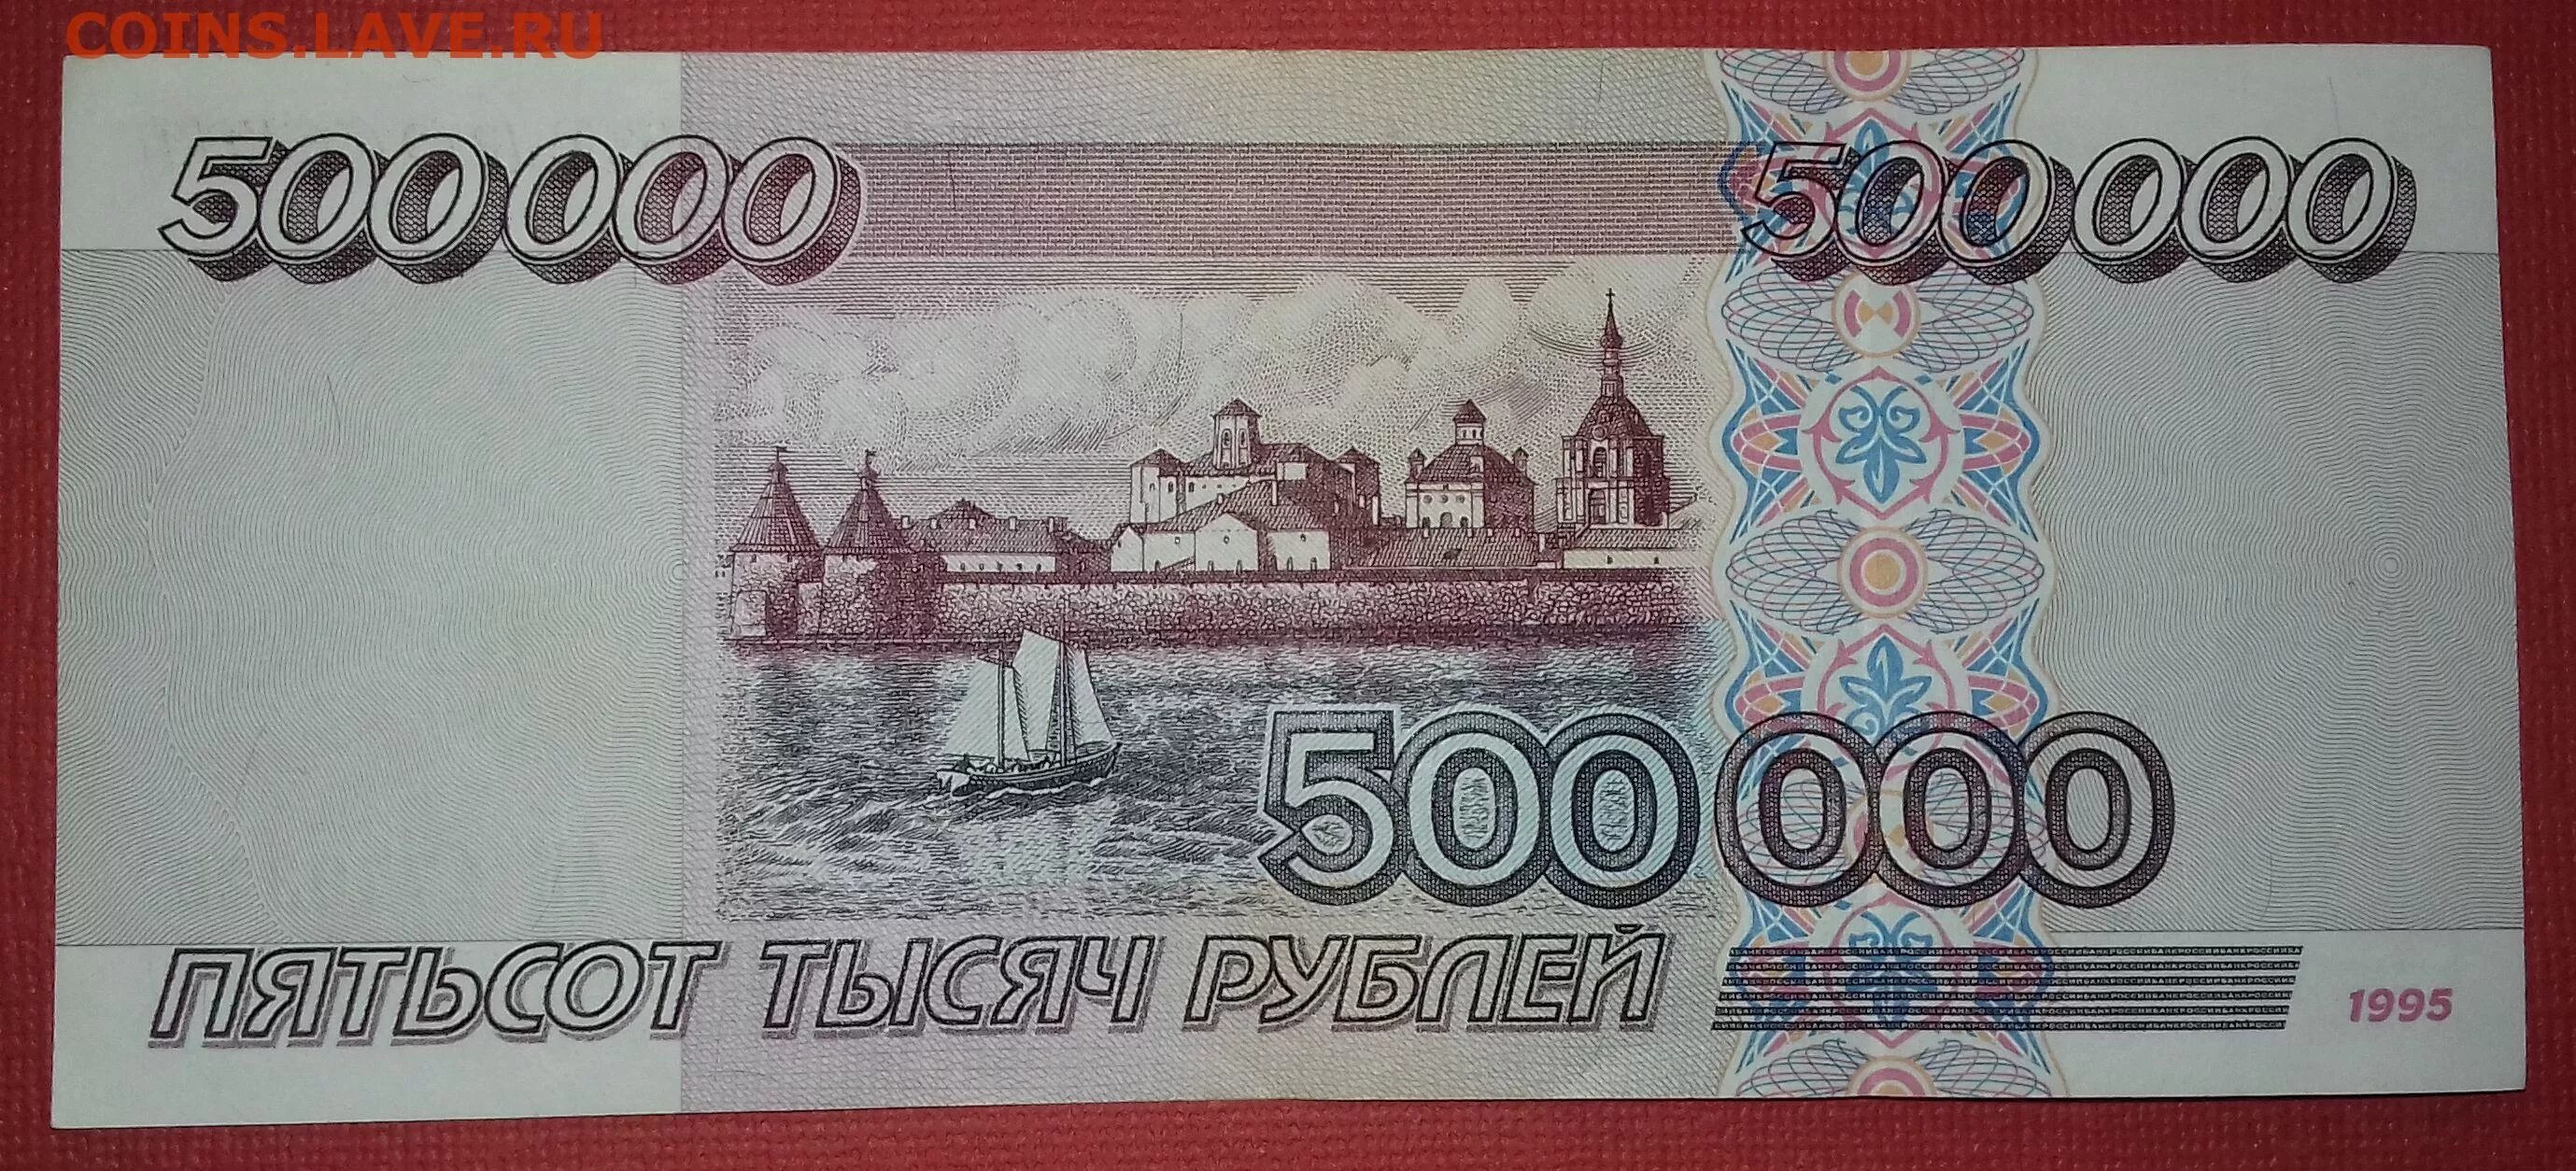 500000 в рублях. Купюра 500000 рублей 1995. 500000 Рублей. Купюра 500000 рублей. Самая большая купюра в рублях.